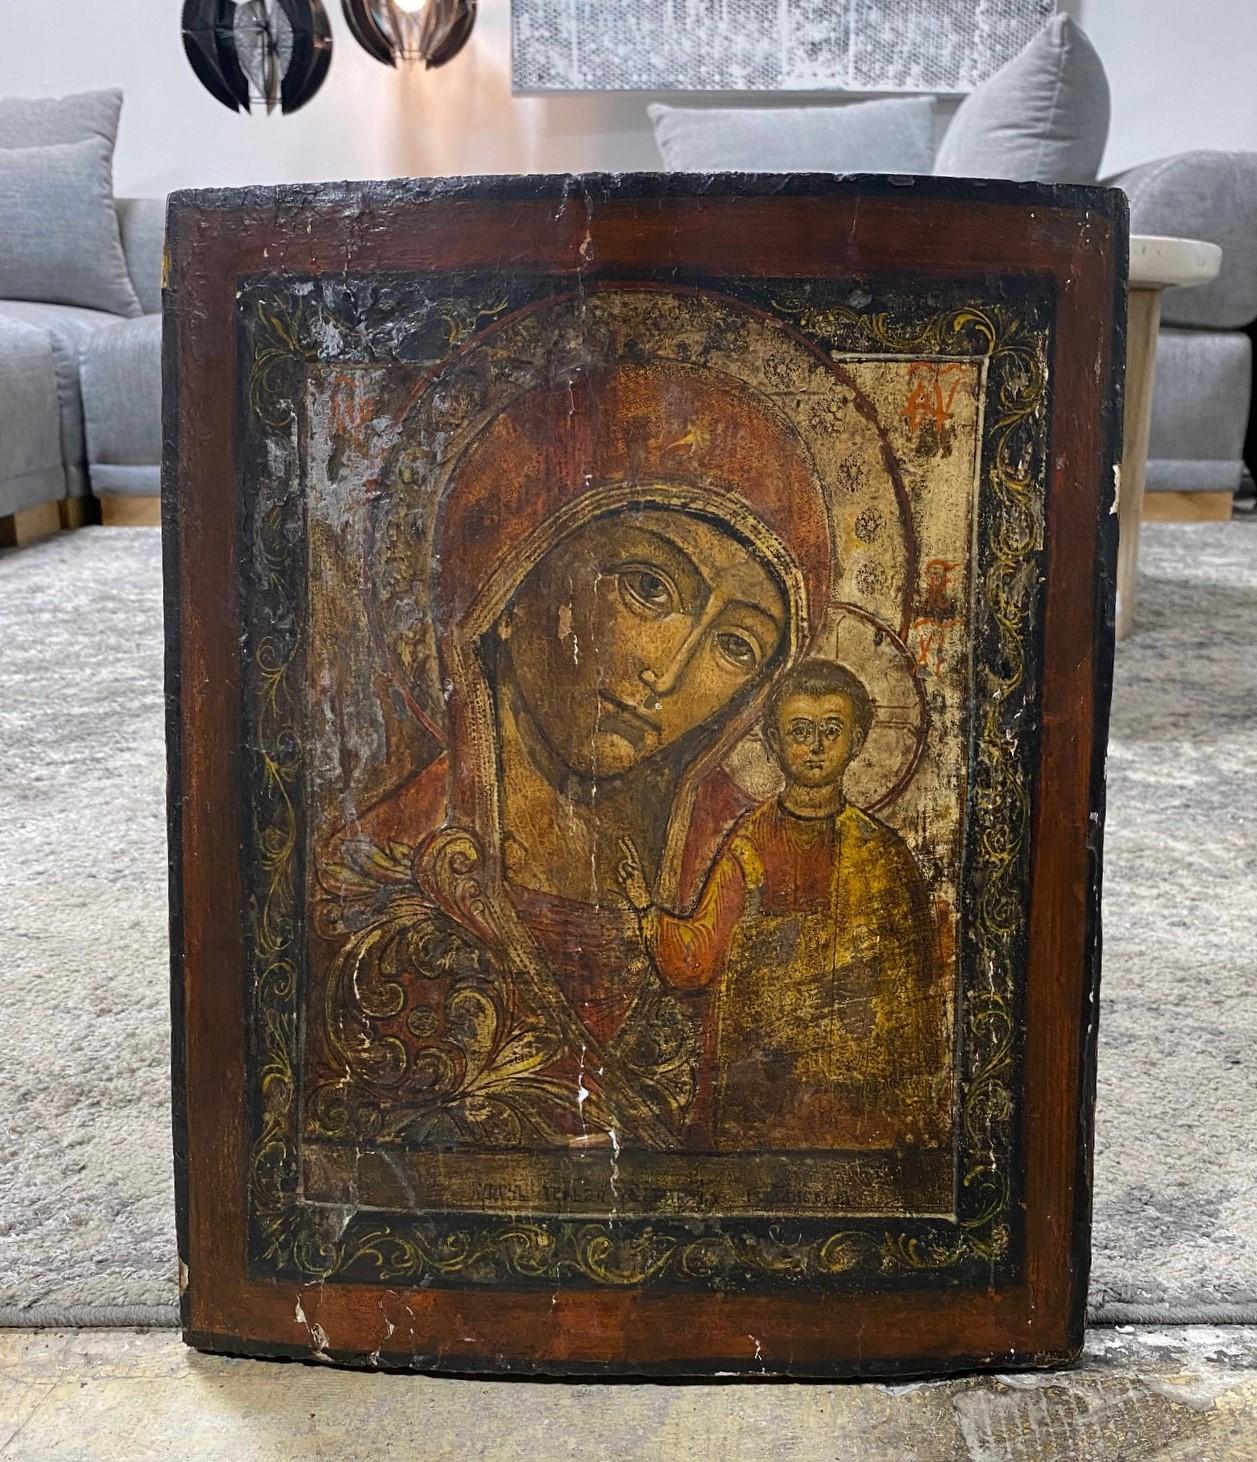 Eine wunderschön einnehmende, dunkel nuancierte russische Ikone der Theotokos von Wladimir (oder möglicherweise Unsere Liebe Frau von Kazan Ikone/Mutter Gottes von Kazan) Temperamalerei (und möglicherweise Blattgold) auf einer Holztafel, die die